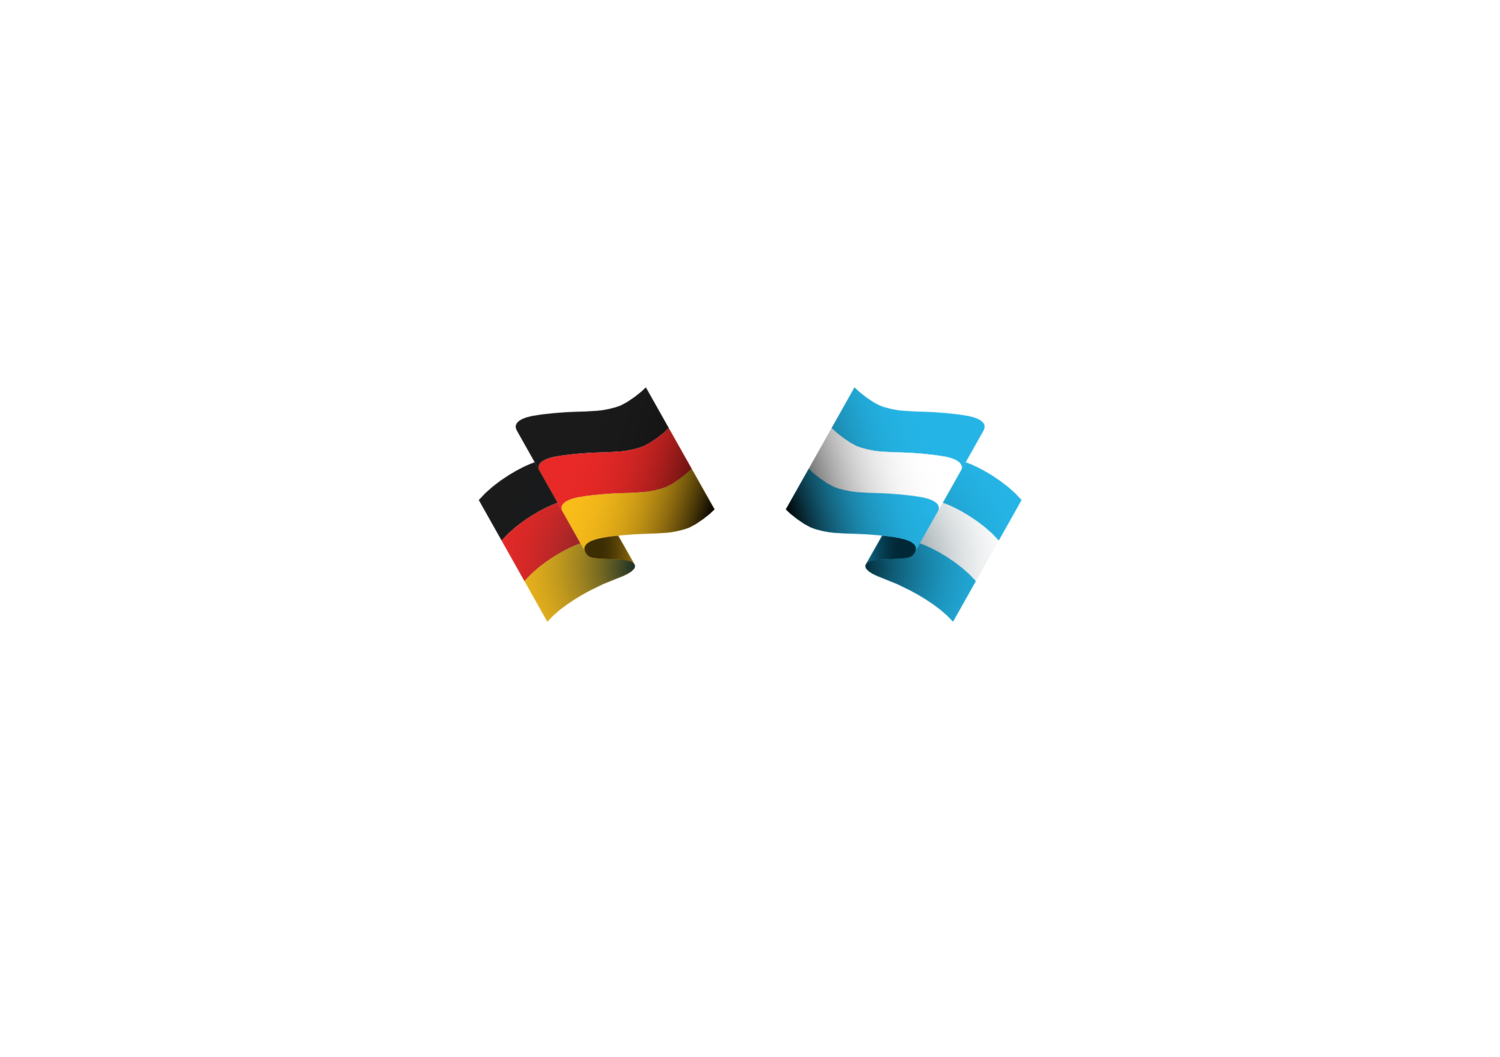 Schlossburger